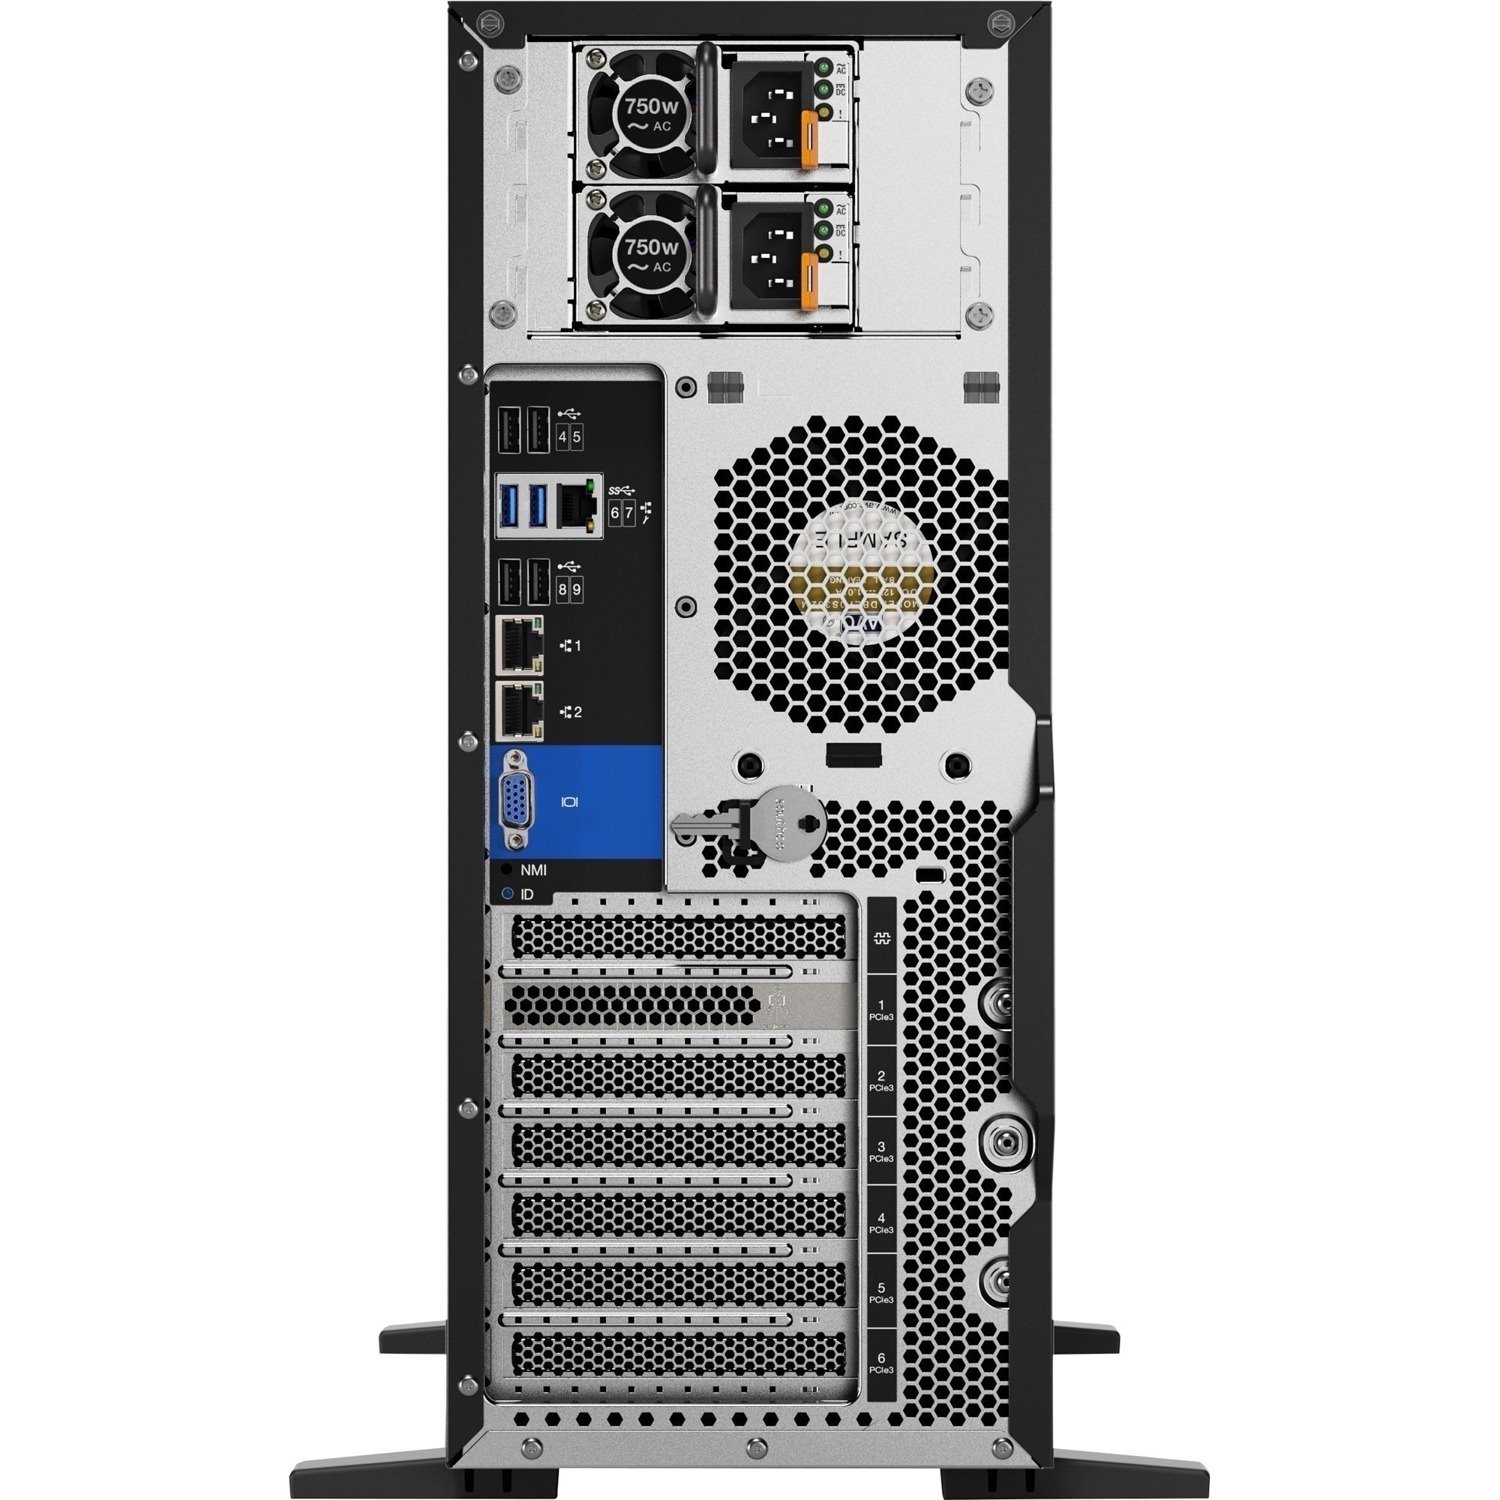 Lenovo ThinkSystem ST550 7X10A0A5AU 4U Tower Server - 1 x Intel Xeon Silver 4210 2.20 GHz - 16 GB RAM - 12Gb/s SAS, Serial ATA/600 Controller